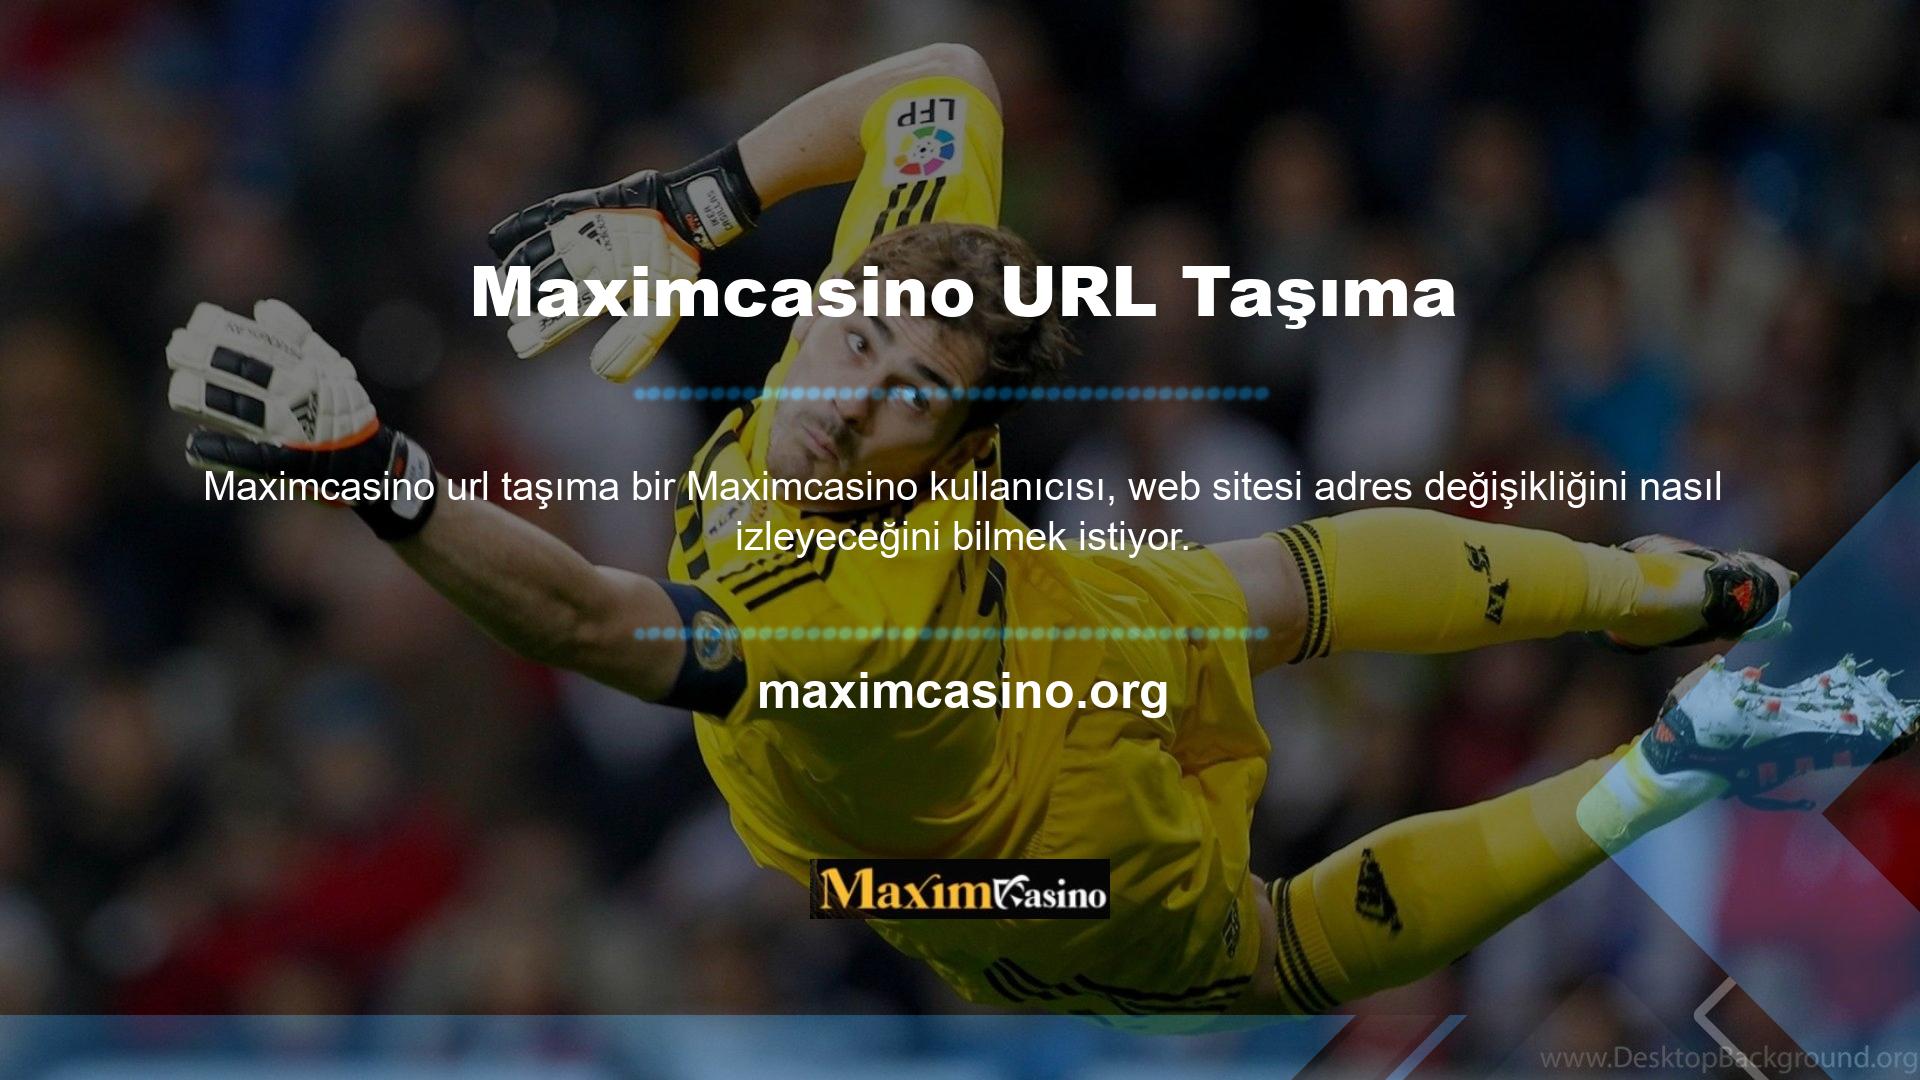 Bu site adresindeki güncellemeler Maximcasino sosyal medya hesapları aracılığıyla üyelere duyurulacaktır